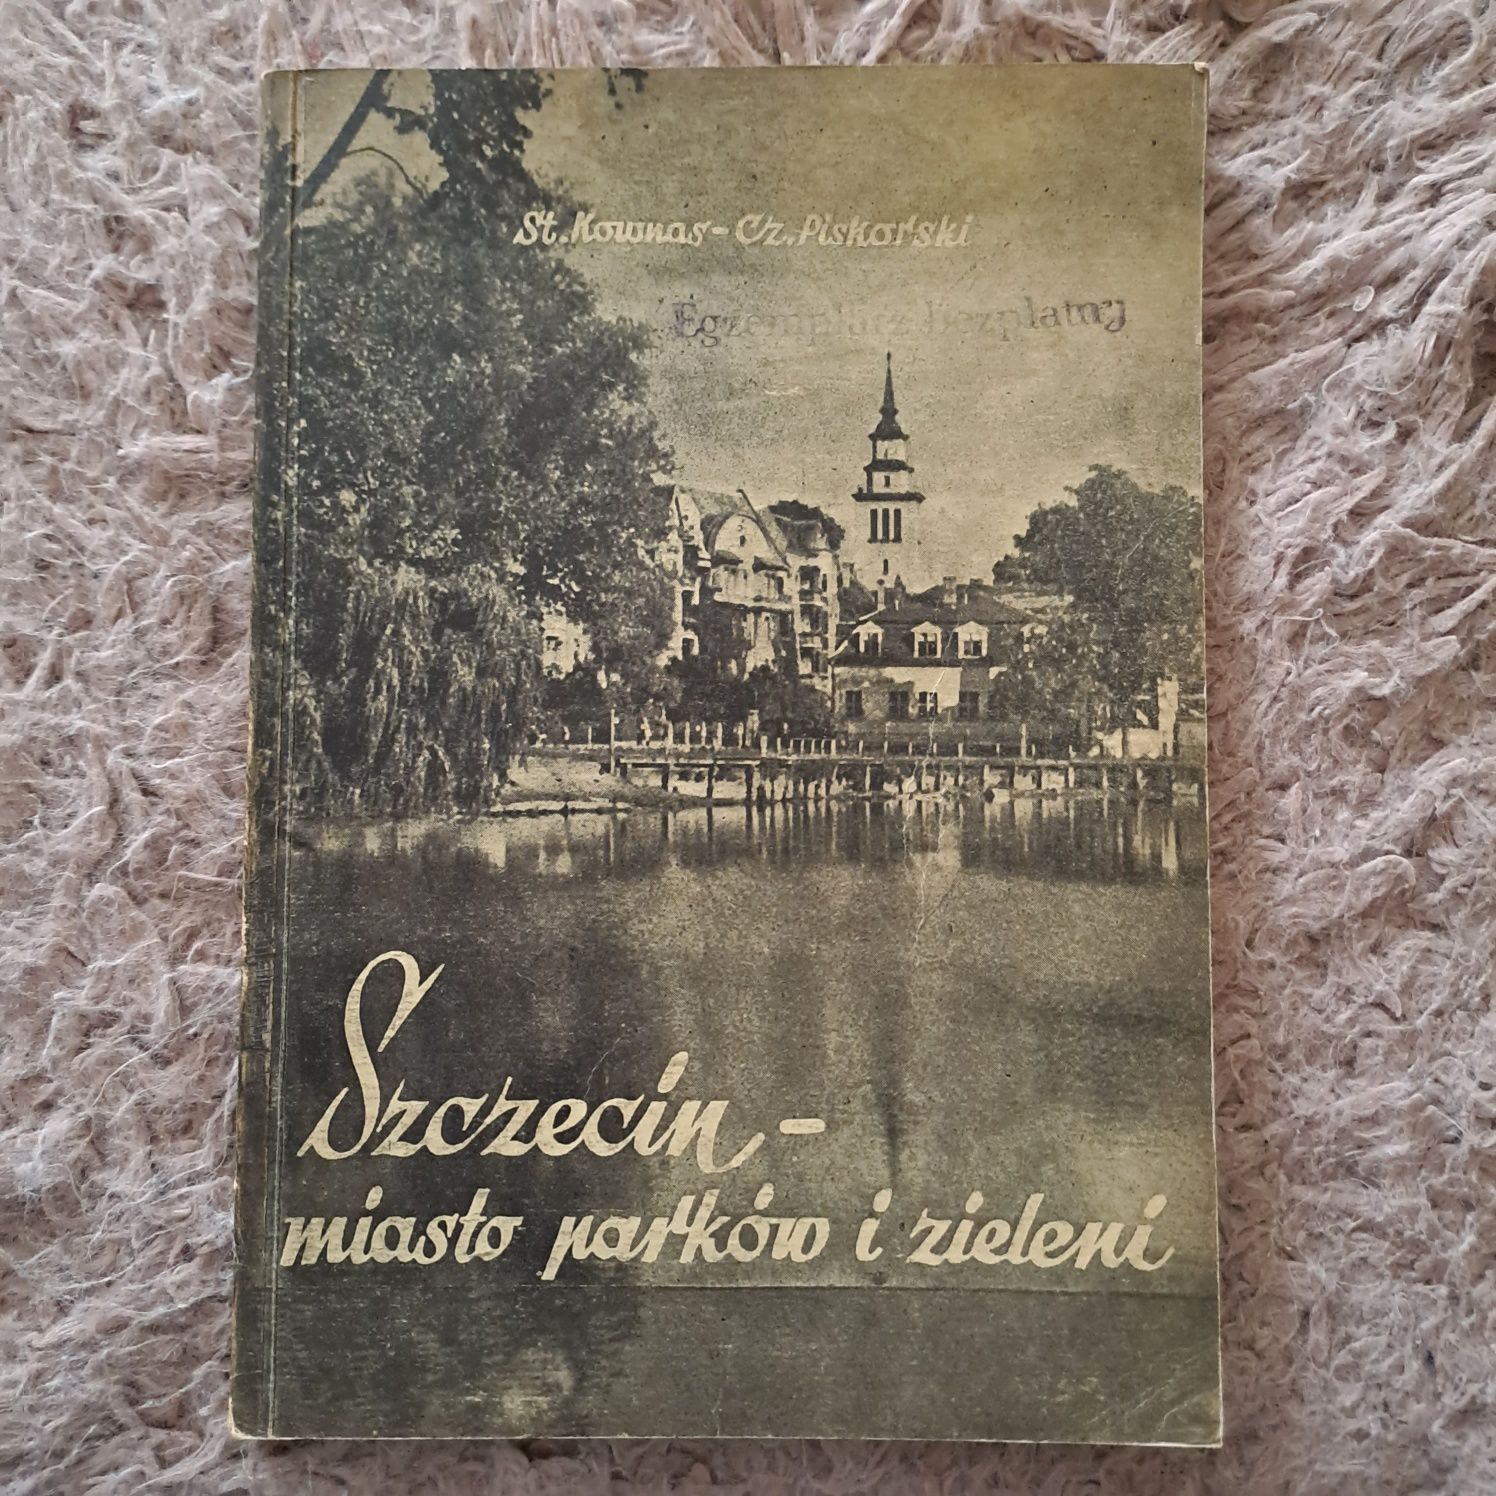 Szczecin- miasto parków i zieleni. 1958